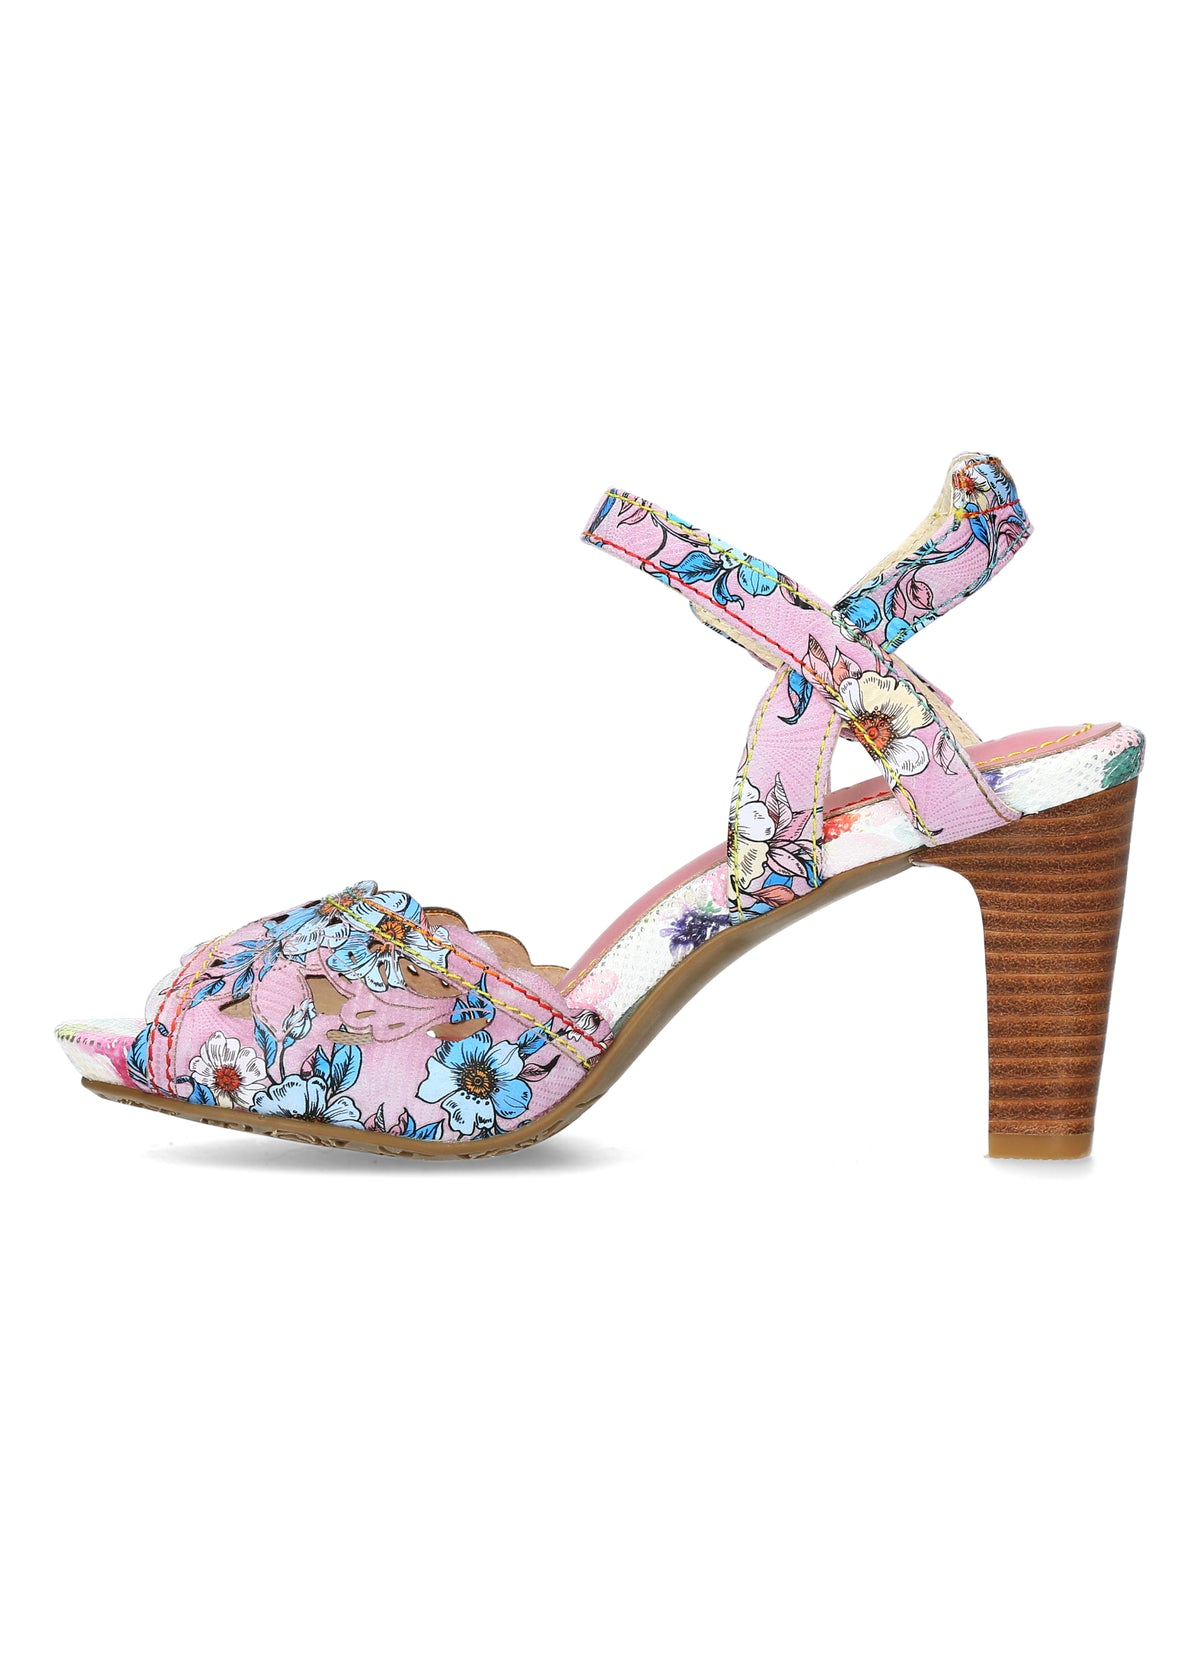 Korolliset sandaalit - Albane 51, pinkki-lilasävyisiä kukkia